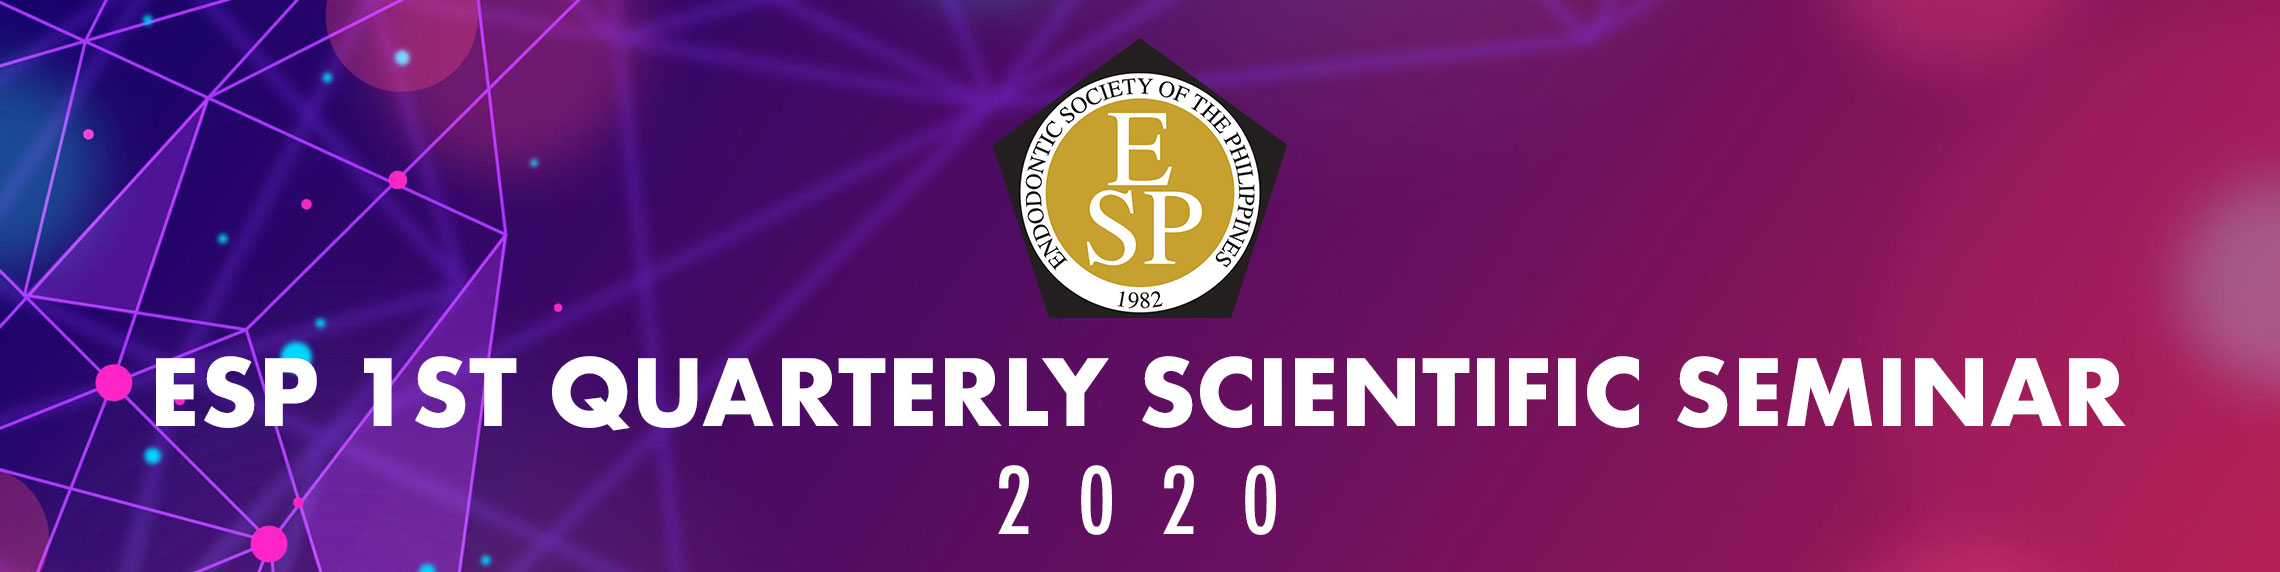 1st ESP Quarterly Scientific Webinar 2020